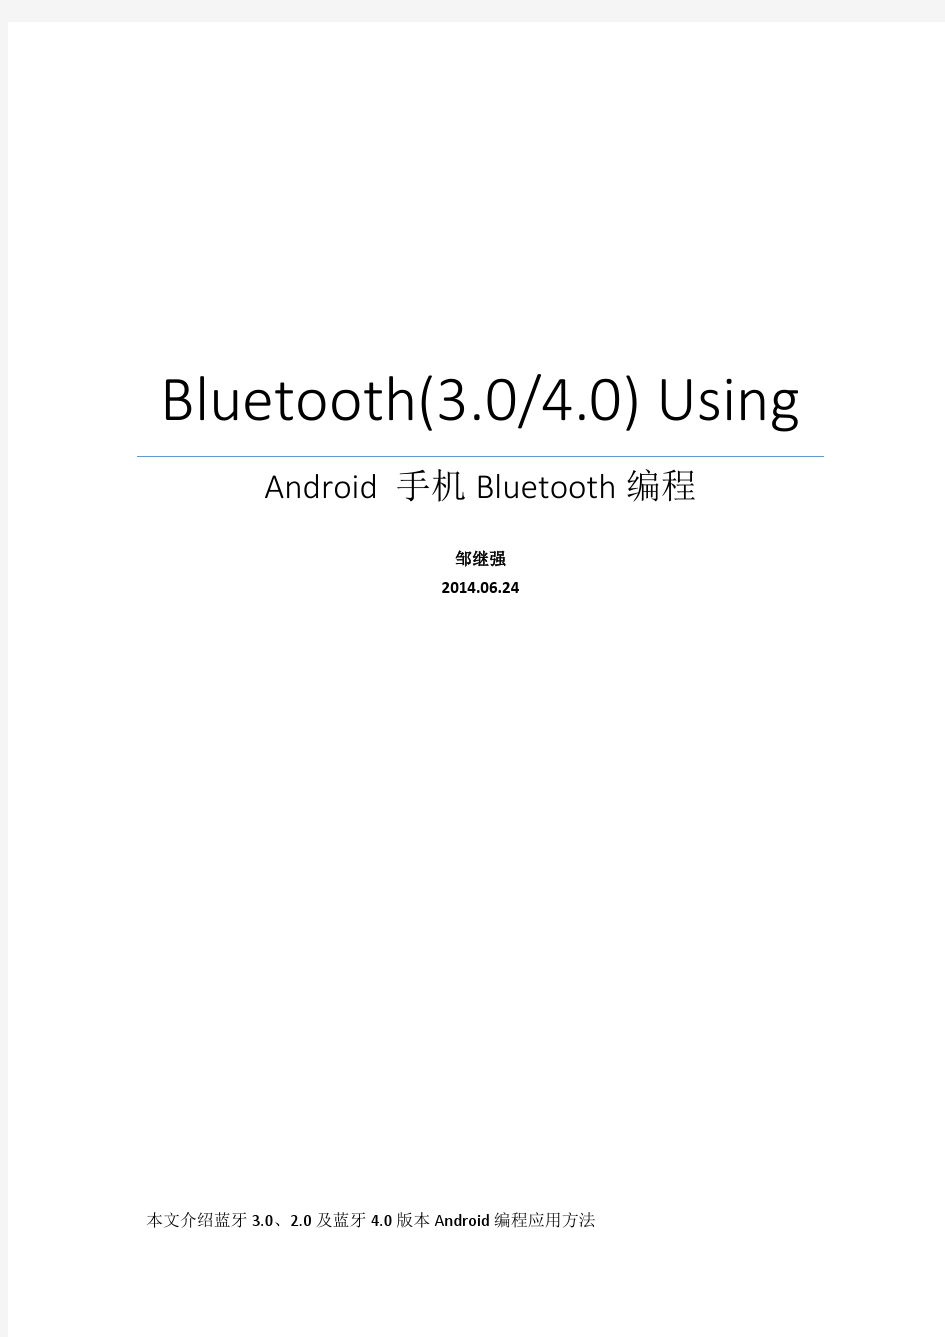 BLE 和经典蓝牙Android编程说明